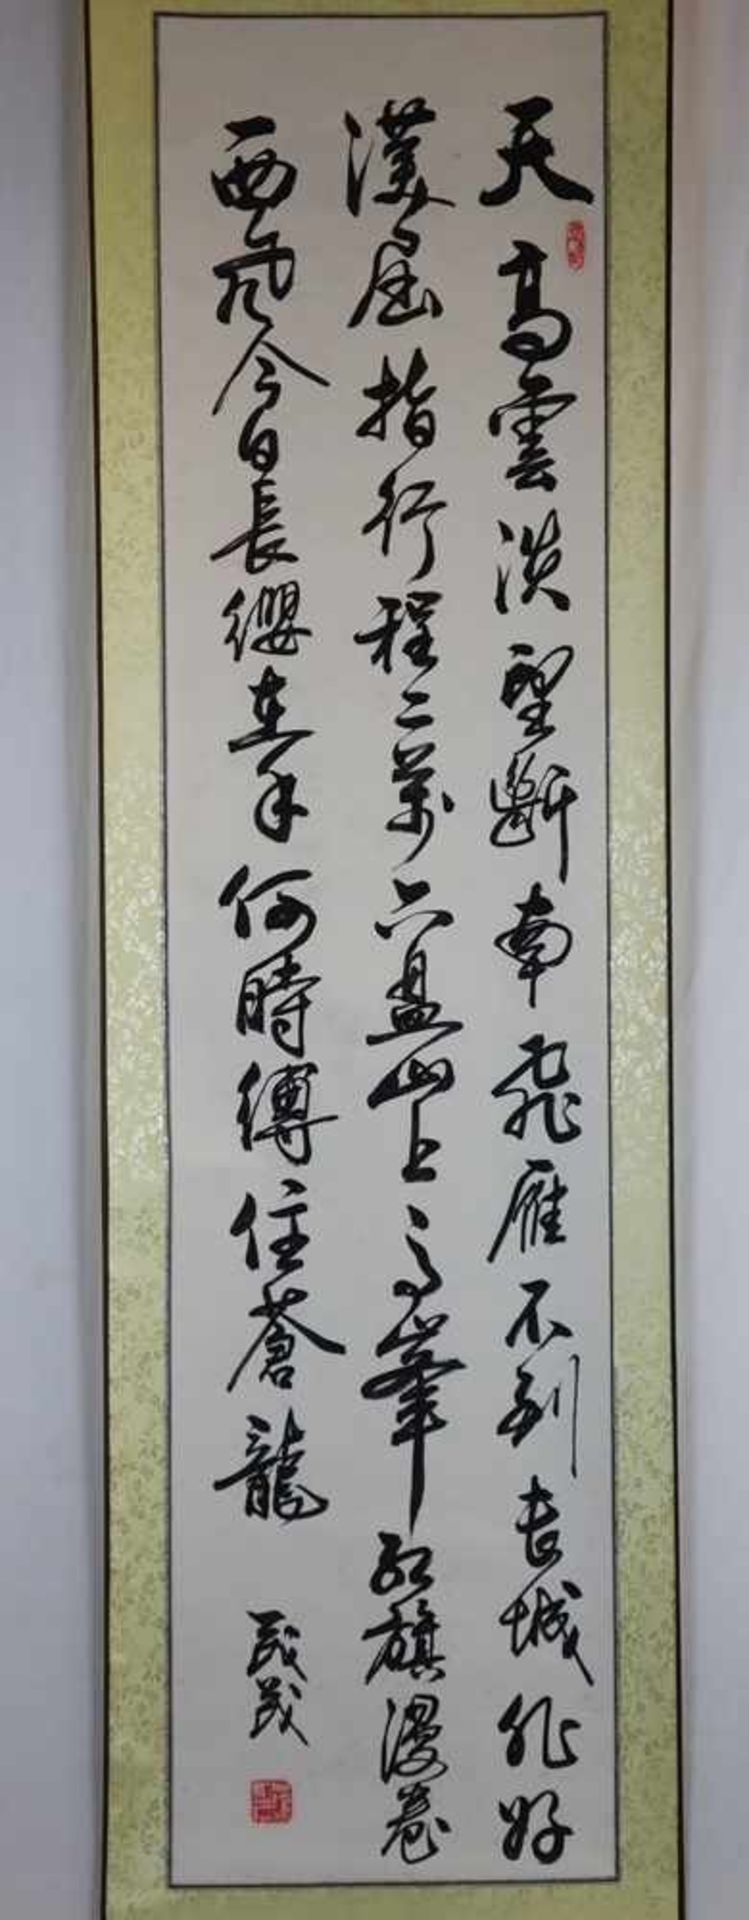 Chinesisches Rollbild / Kalligraphie - Zhirong Guo, Tusche auf Papier, gesiegelt, ca.144x38cm, als